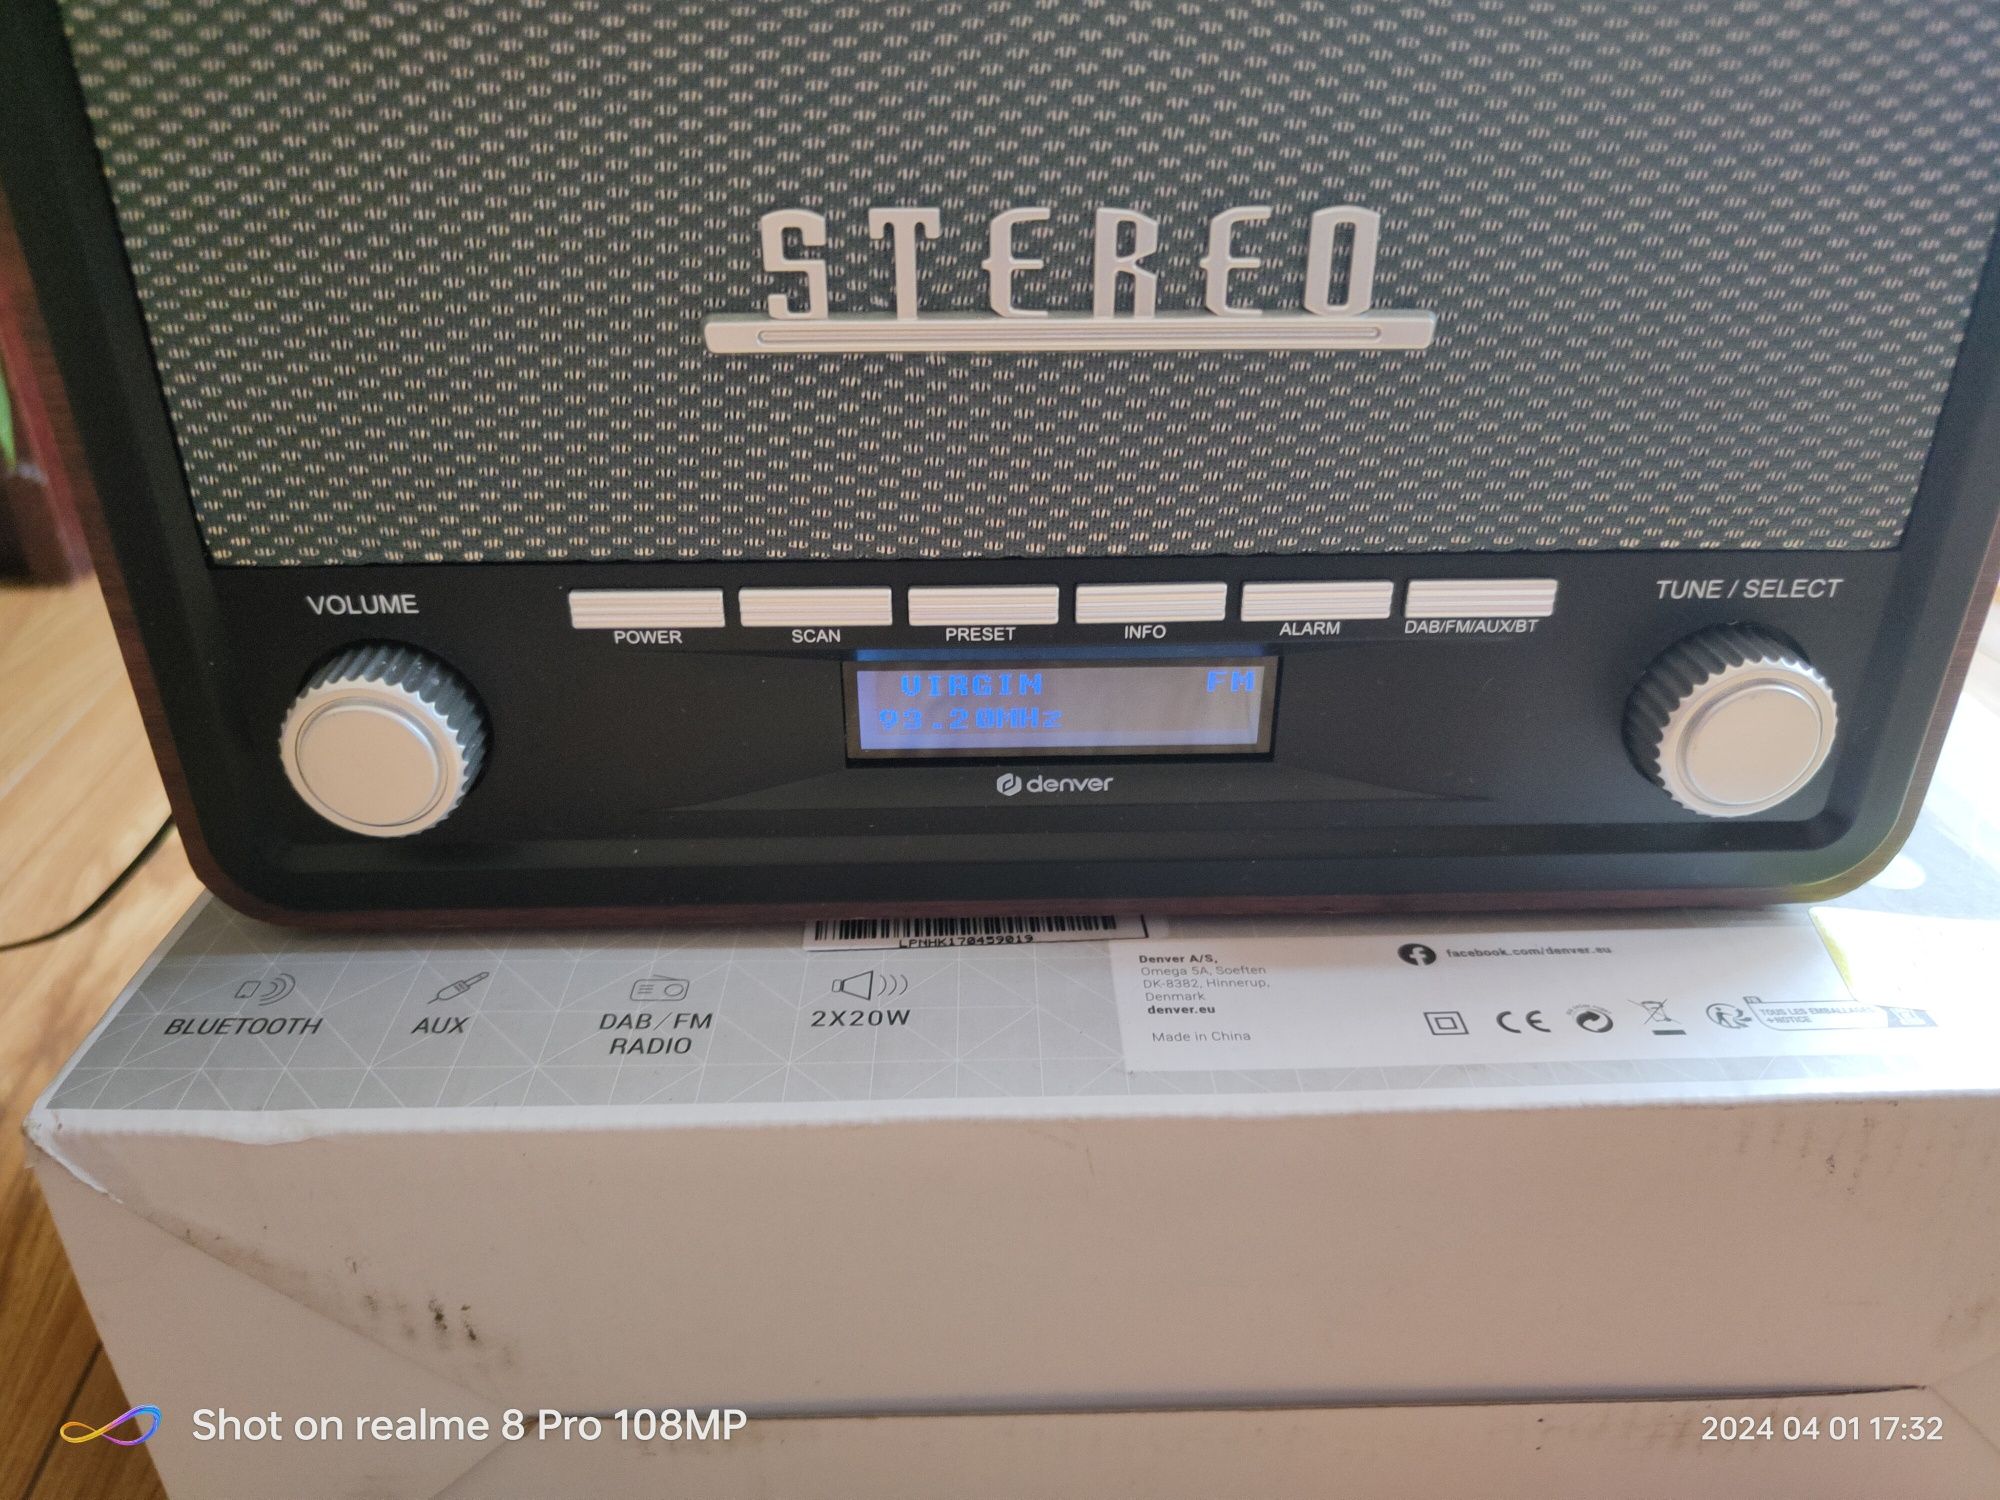 Radio vintage dab,fm, Bluetooth,aux in,nou.